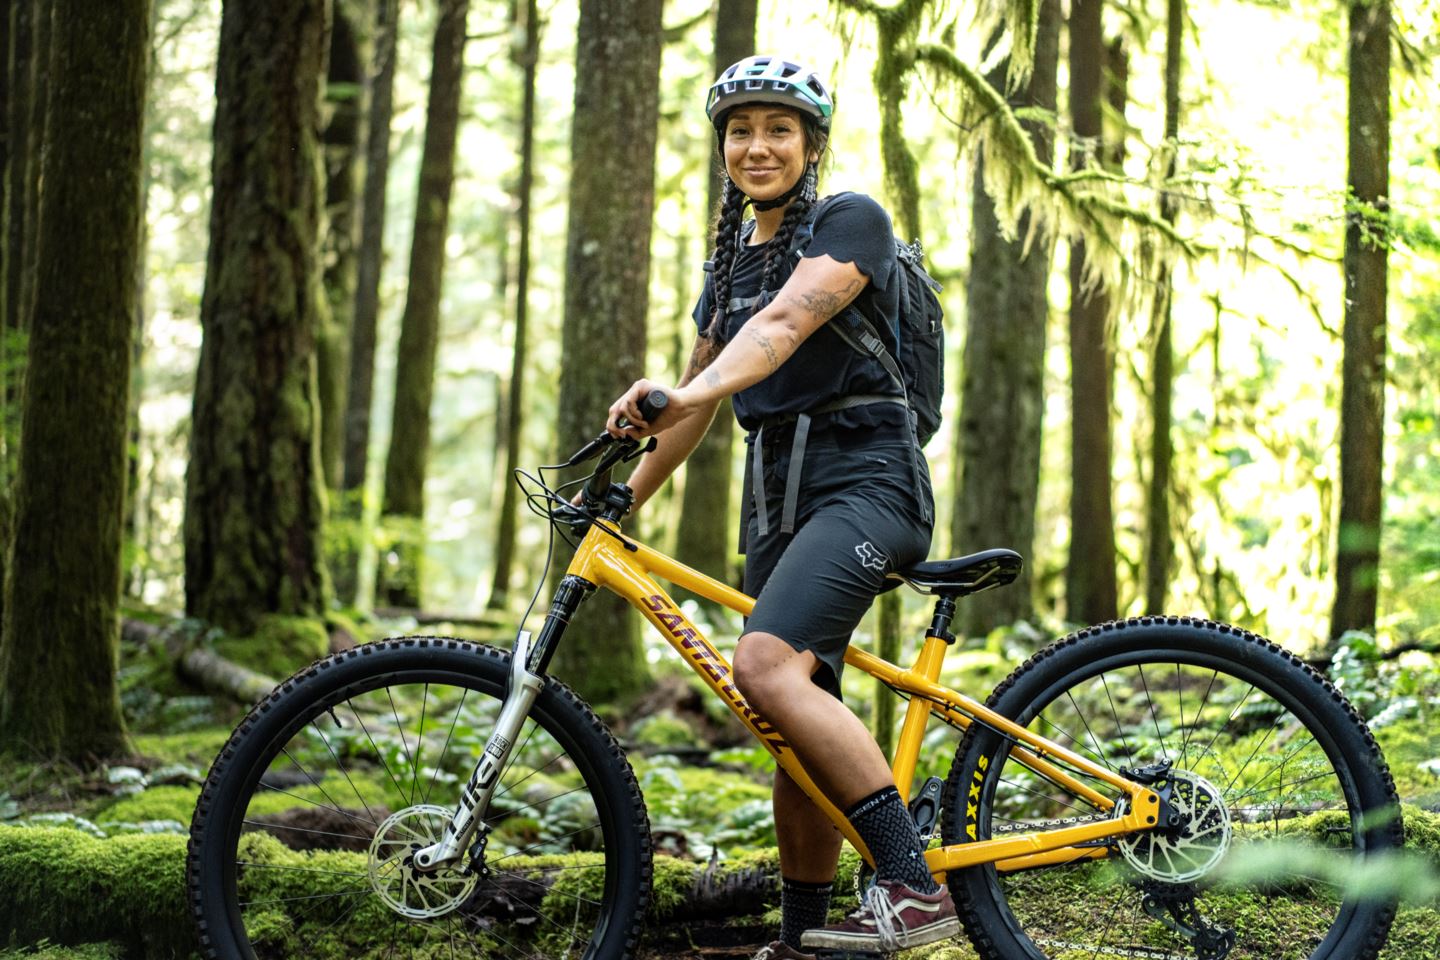 Myia Antone in a bike helmet with her bike in the woods